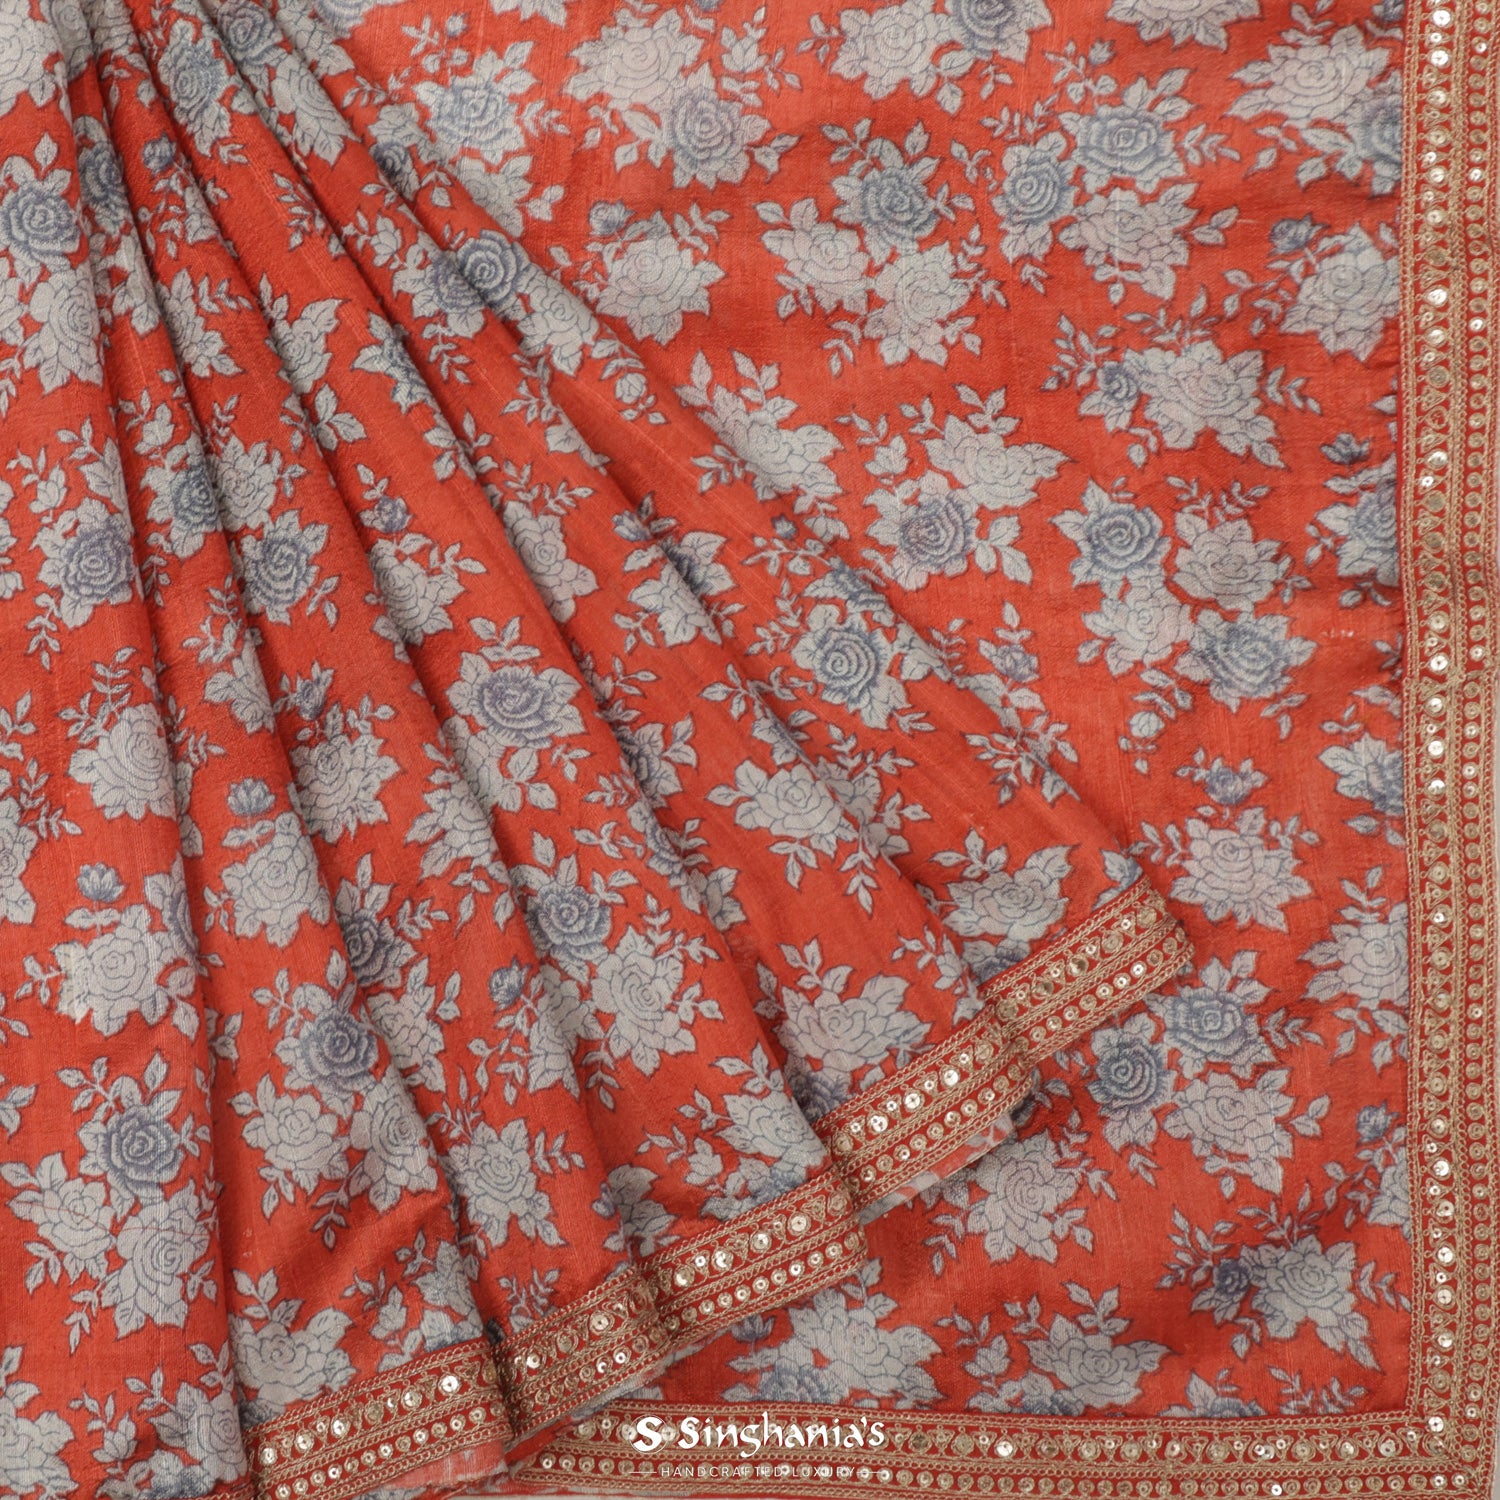 Vermilion Orange Dupion Silk Saree With Printed Floral Pattern